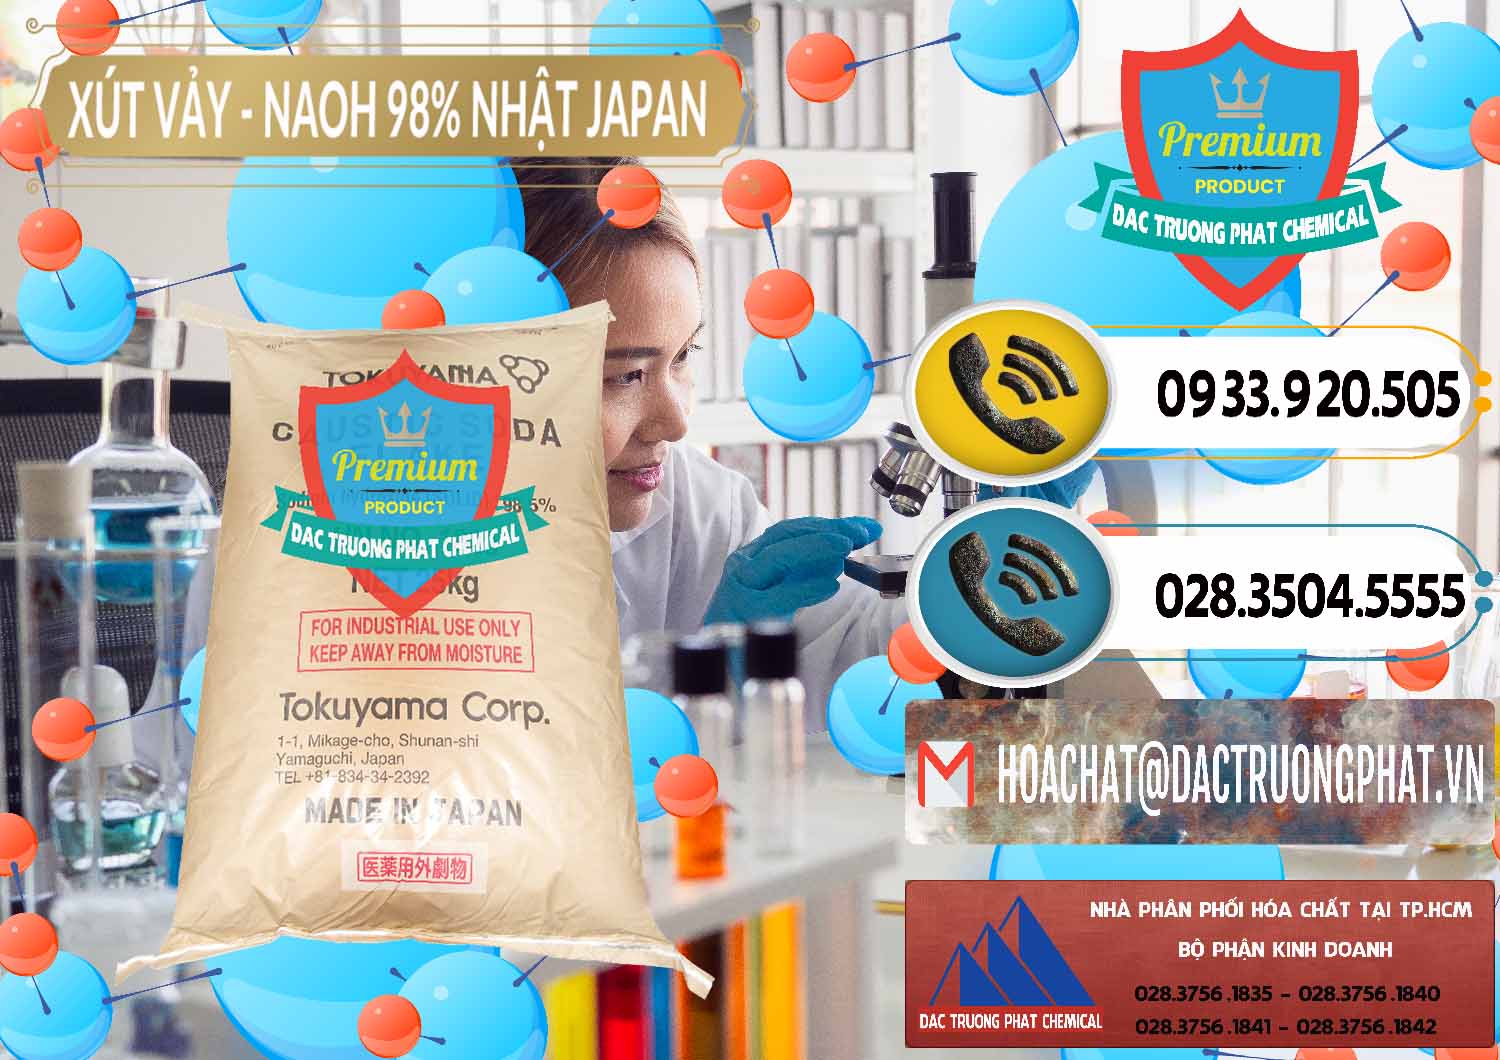 Công ty nhập khẩu ( bán ) Xút Vảy - NaOH Vảy 98% Tokuyama Nhật Bản Japan - 0173 - Nhà cung cấp - bán hóa chất tại TP.HCM - hoachatdetnhuom.vn